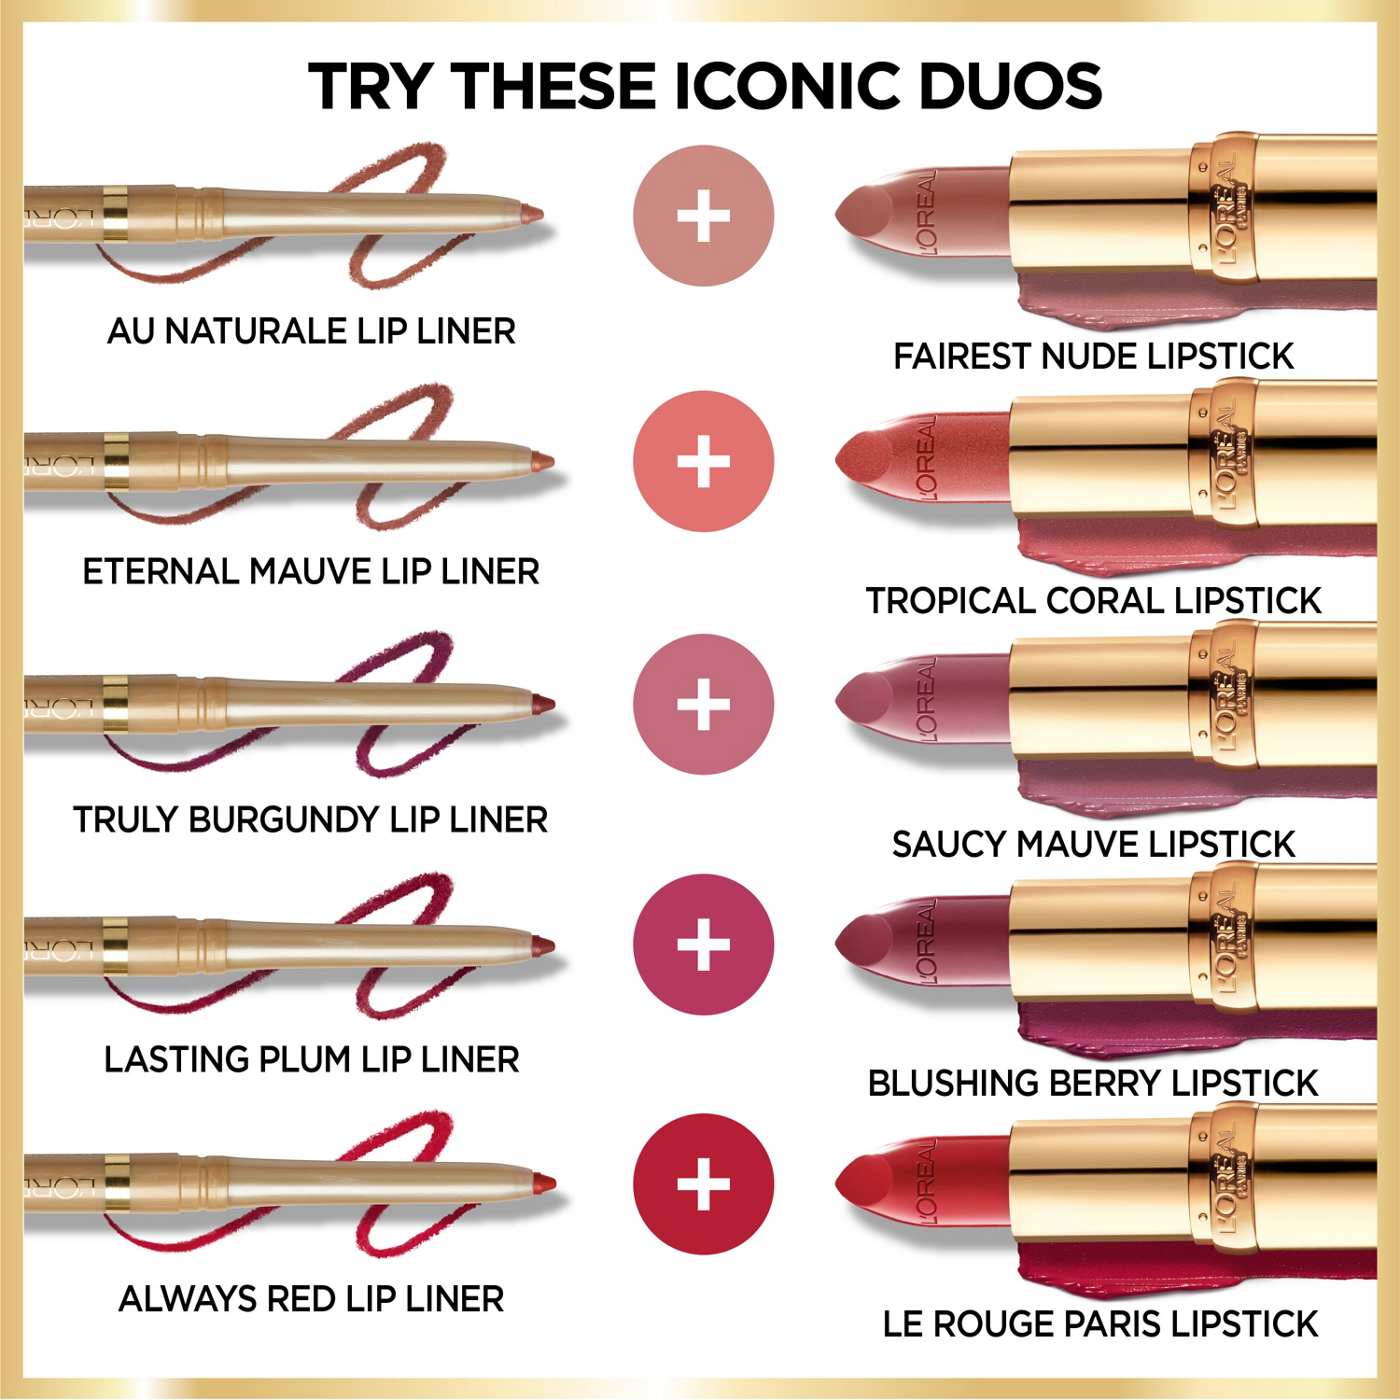 L'Oréal Paris Colour Riche Original Satin Lipstick - Mica; image 3 of 6